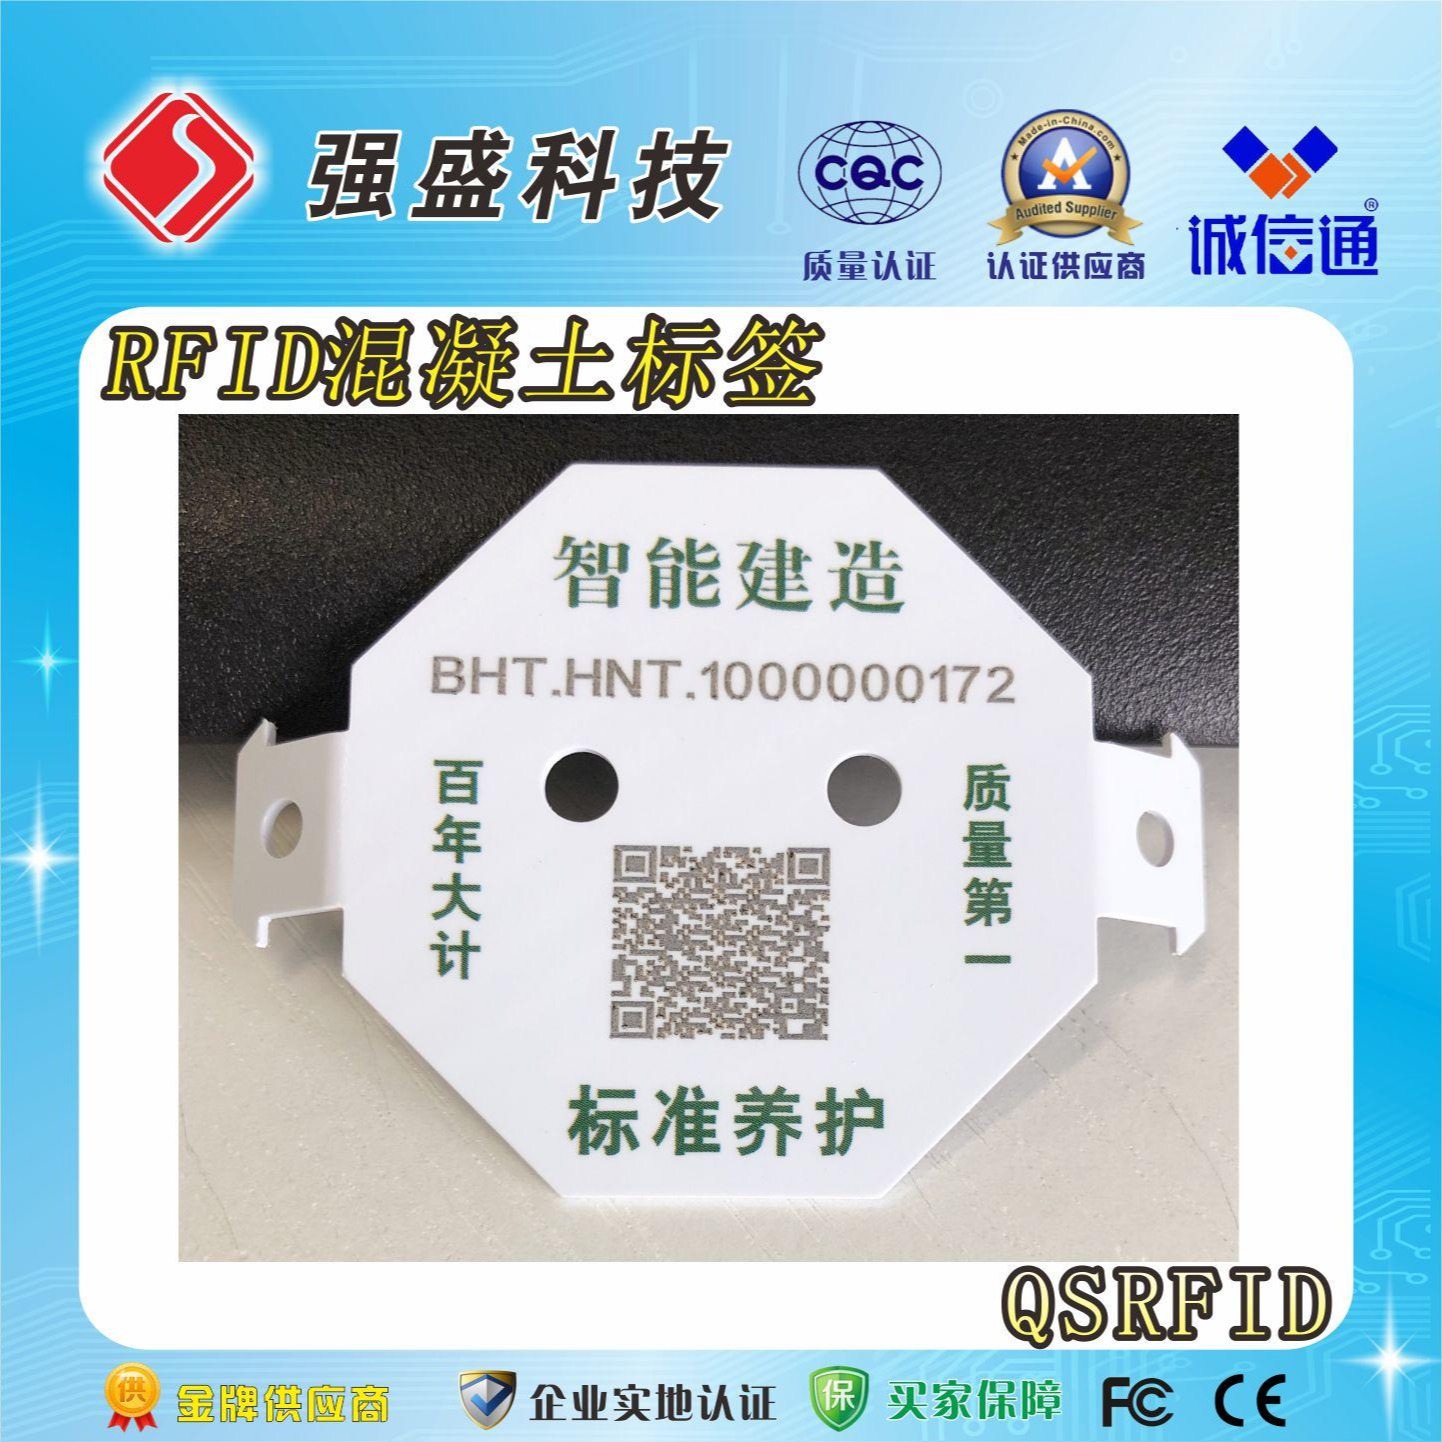 供应水泥标签 RFID水泥电子标签 水泥构件标签